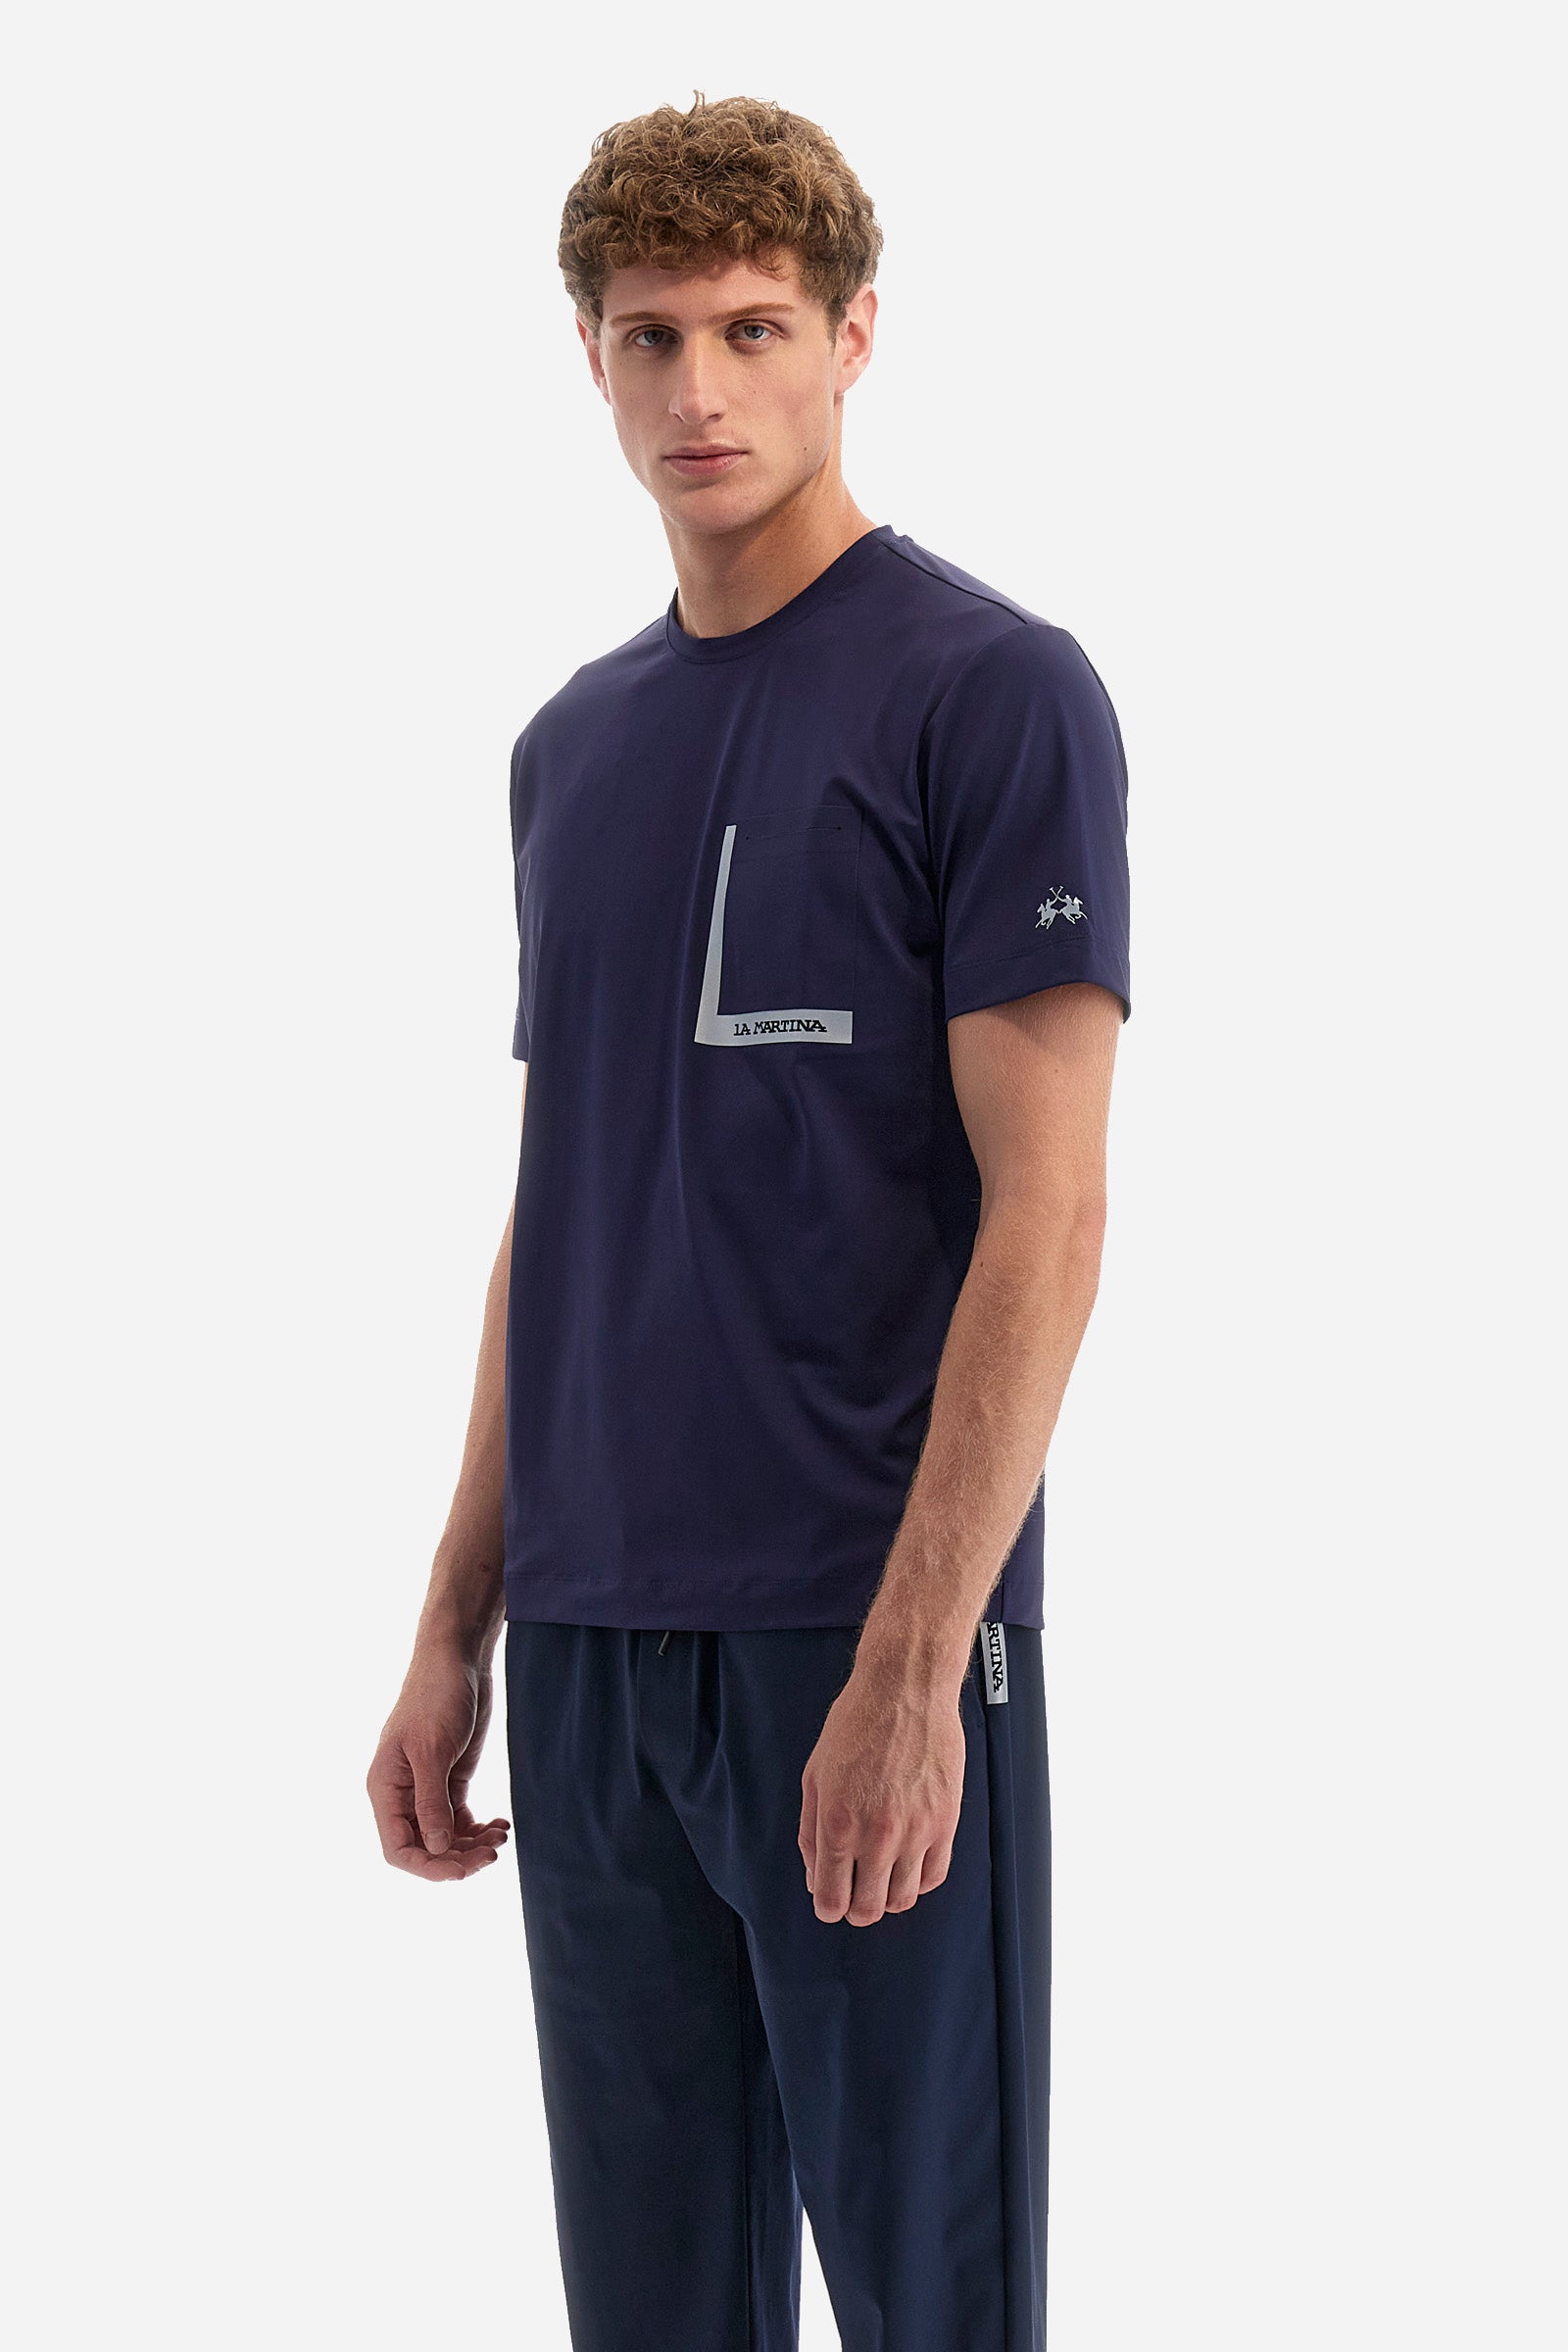 T-shirt coupe classique en tissu synthétique - Ynyr